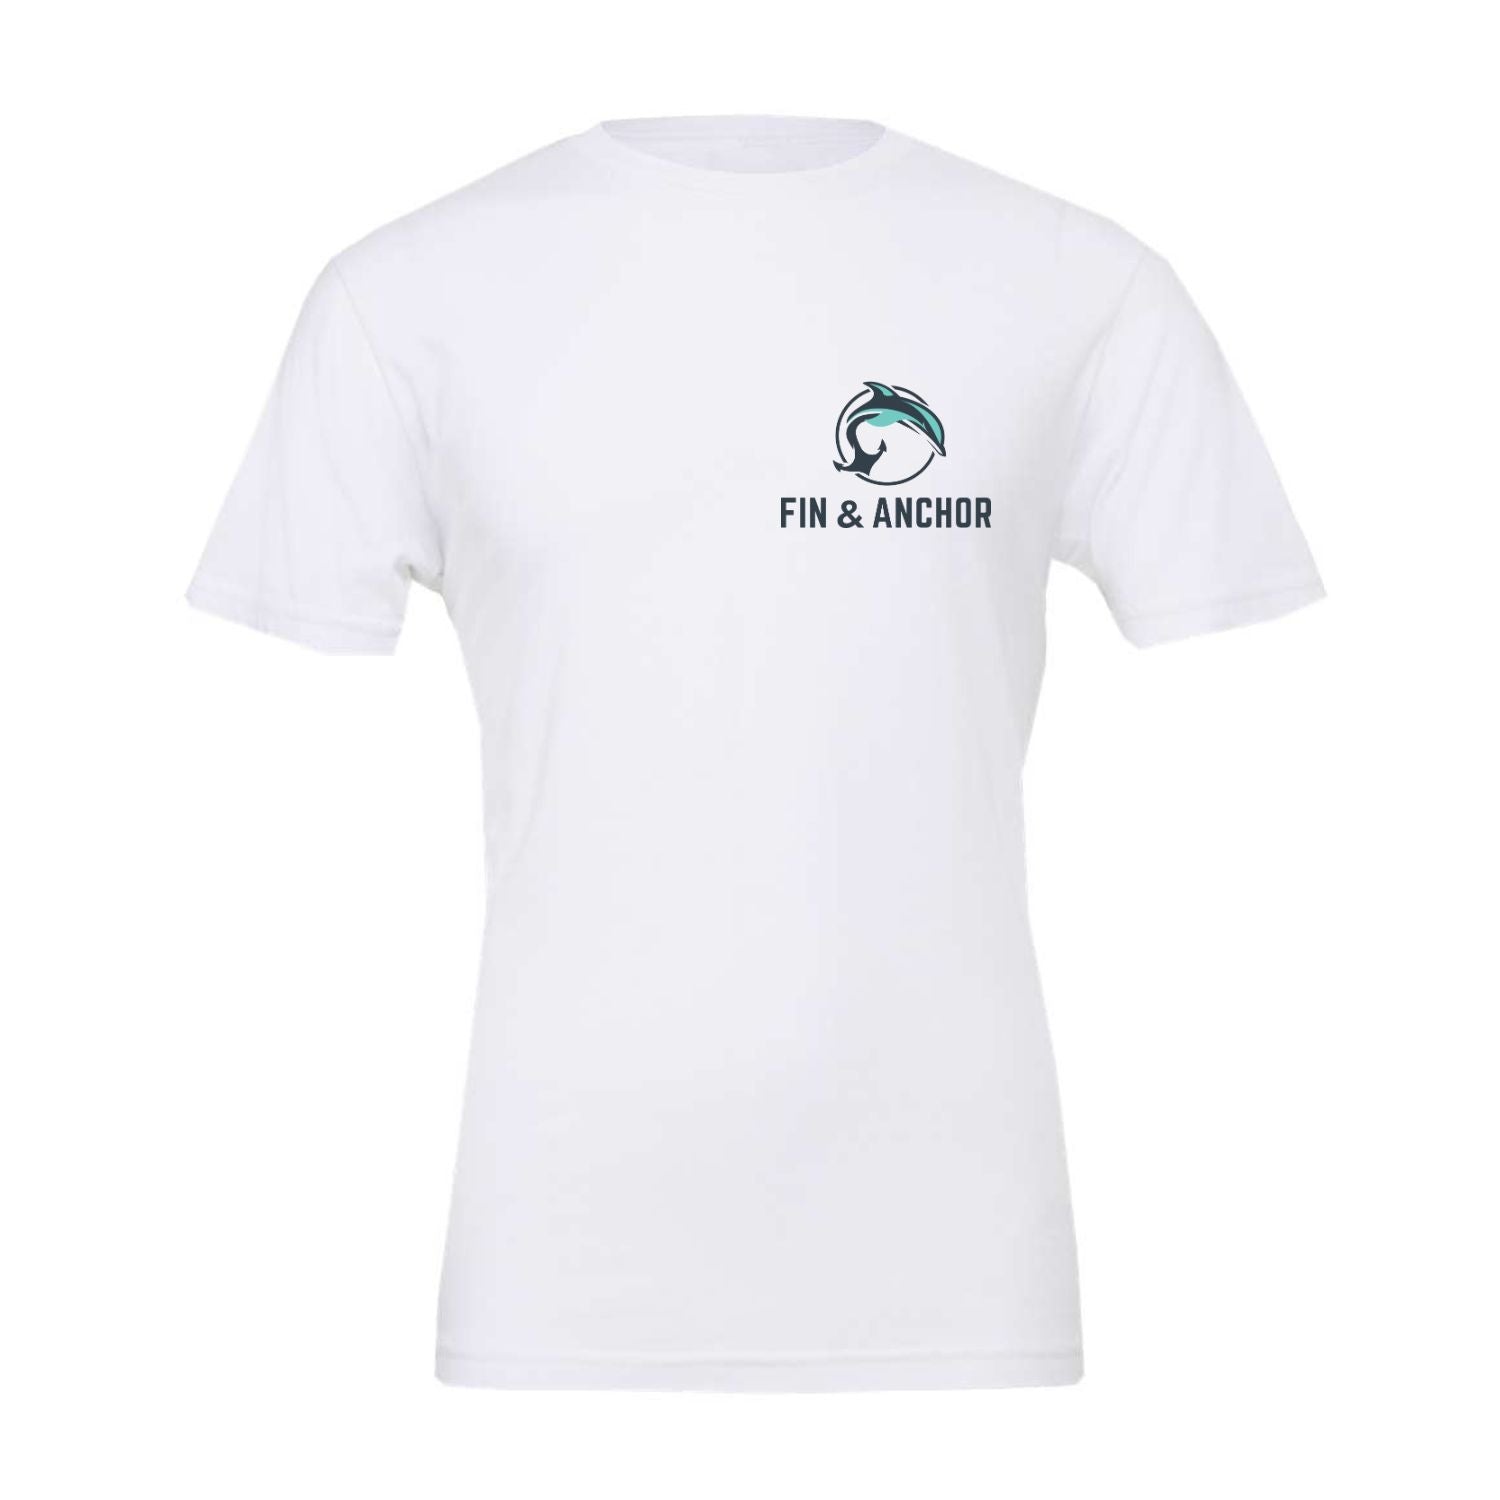 Fin & Anchor Long Beach Unisex Jersey Short Sleeve T-Shirt